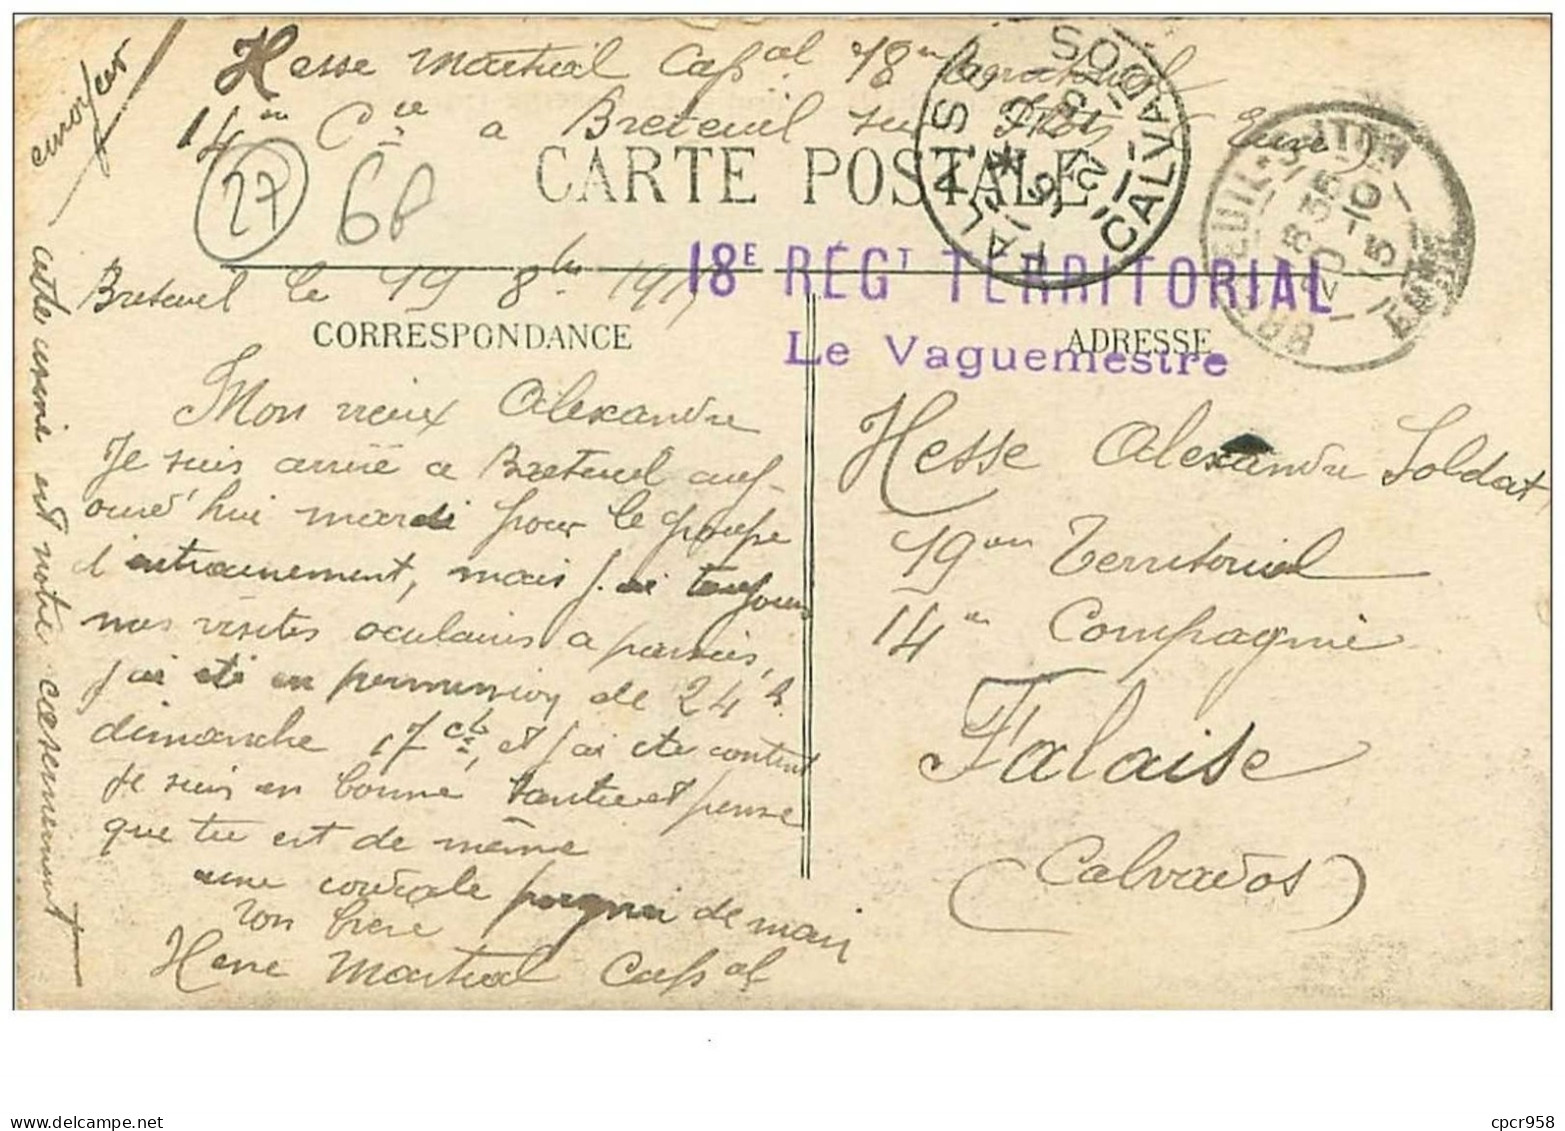 27.BRETEUIL.n°12624.LA CASERNE (1914-1915) - Breteuil